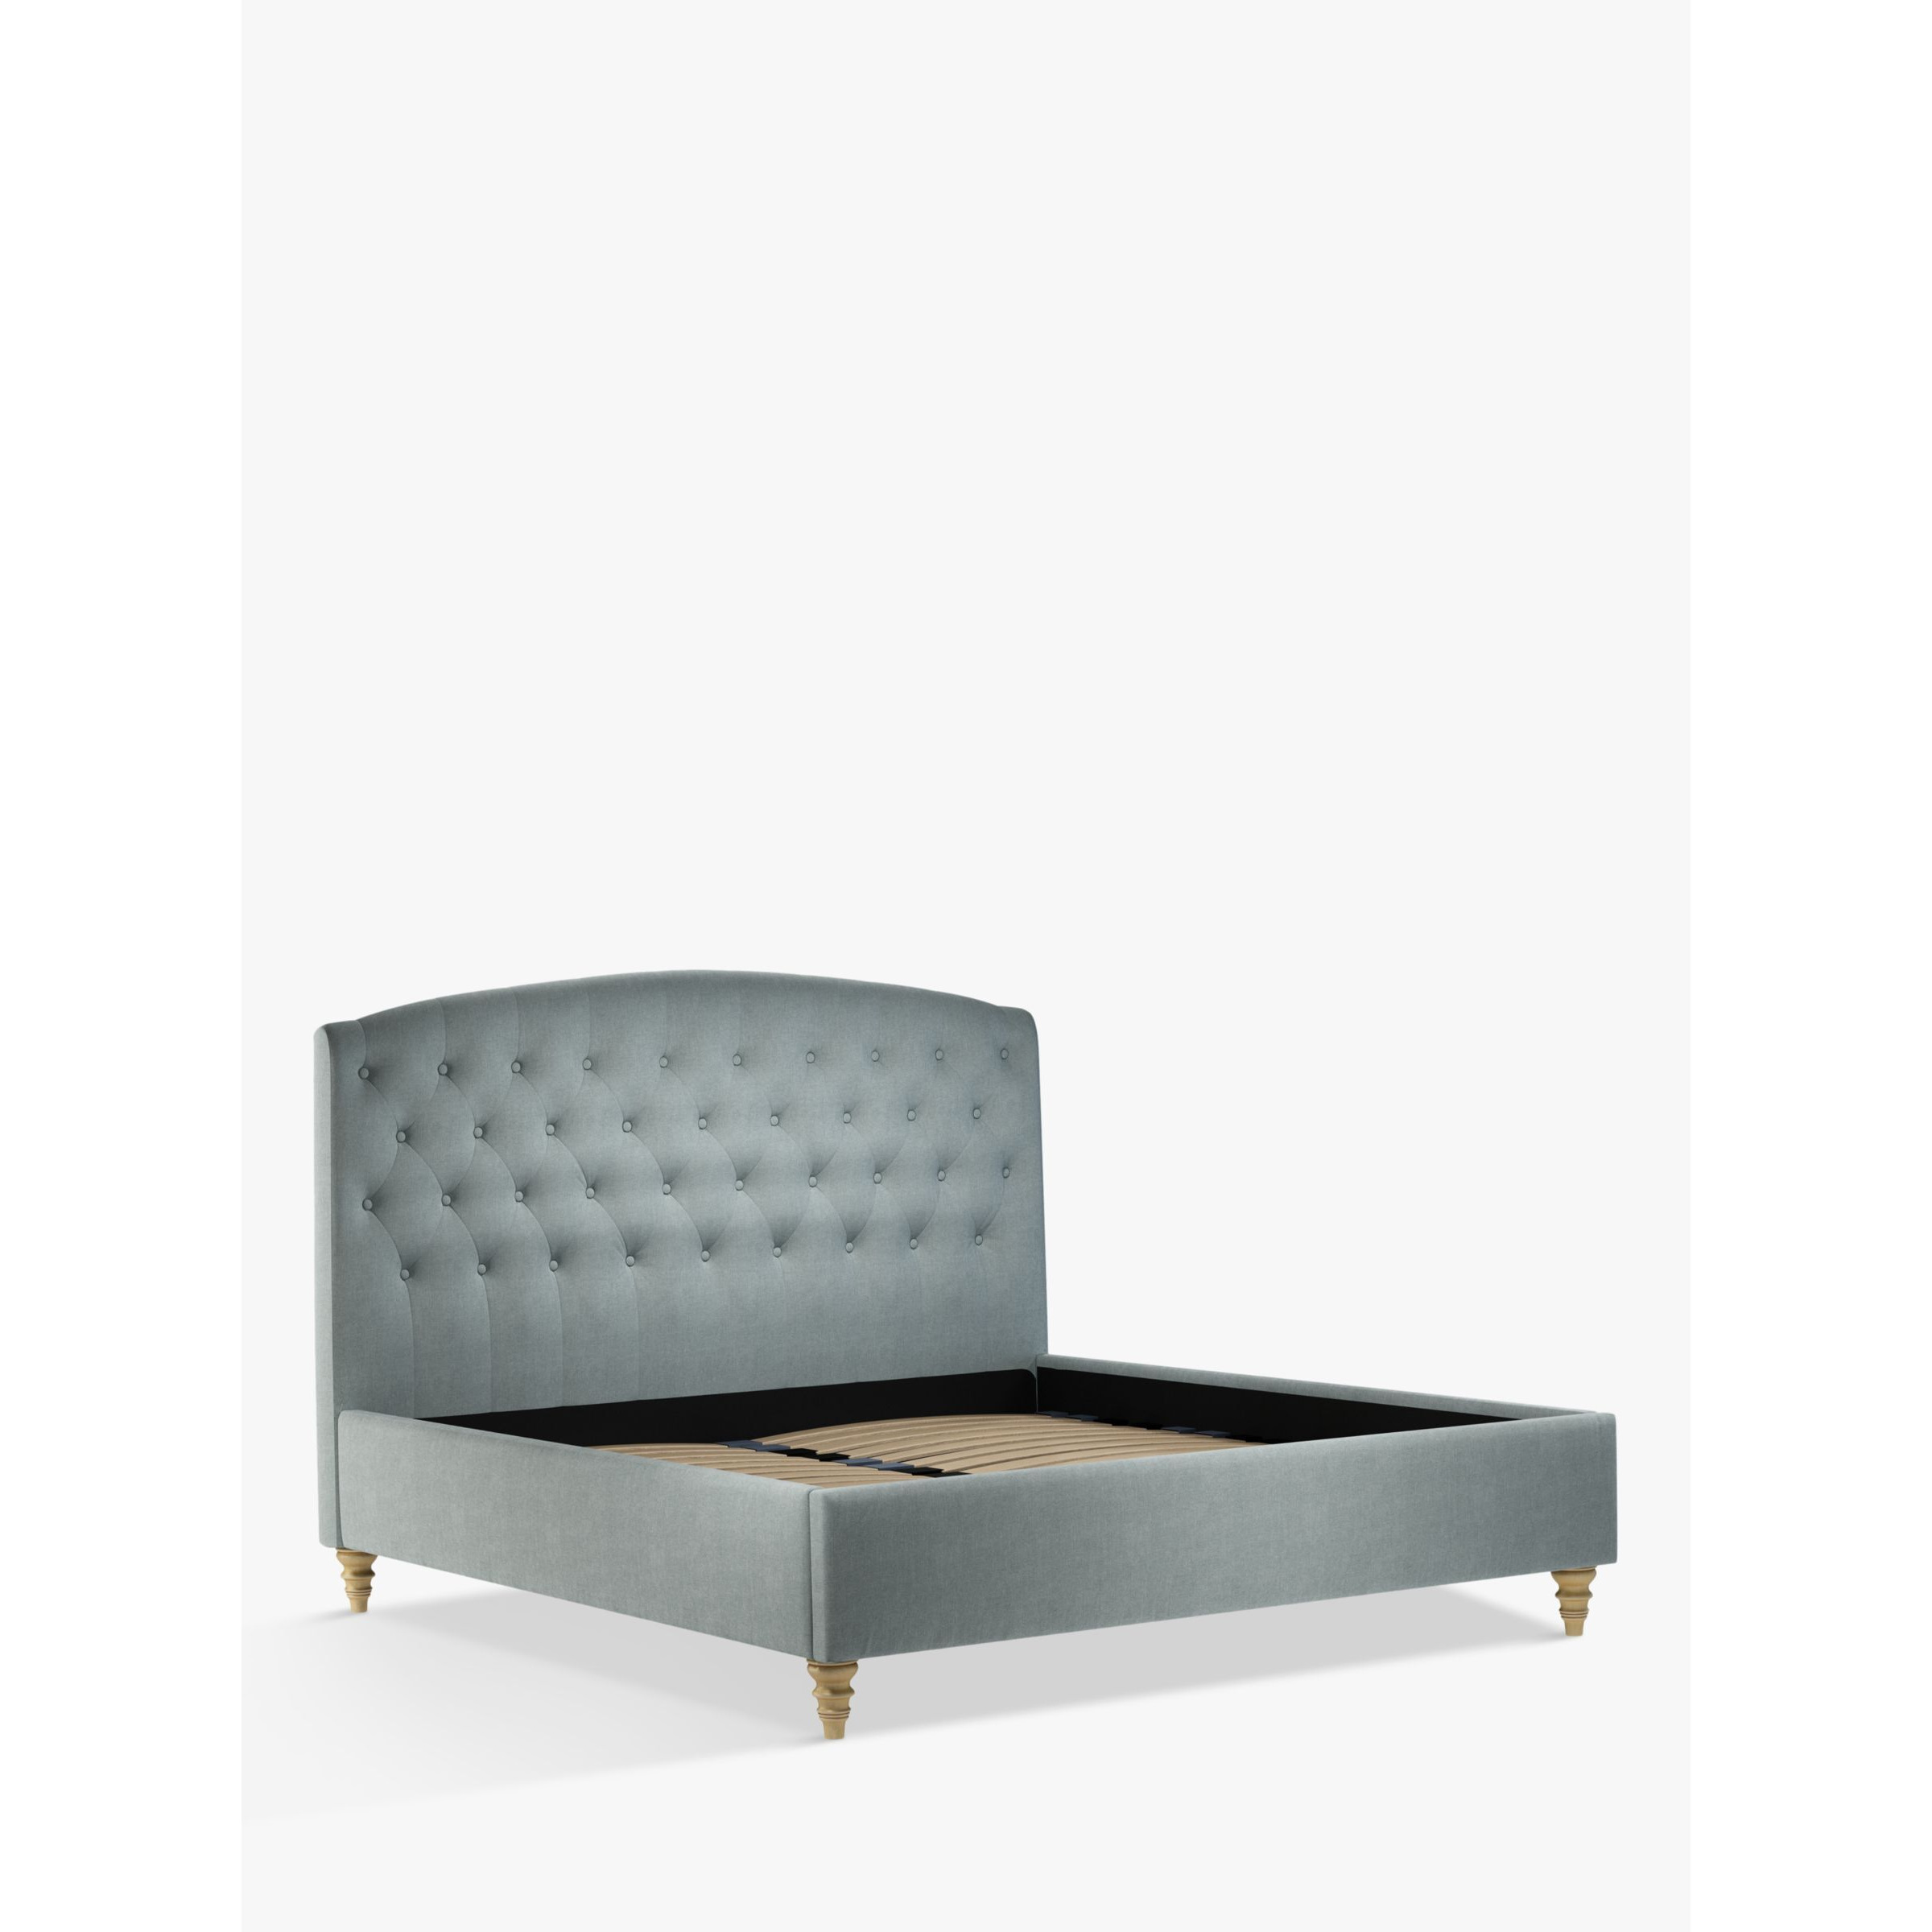 John Lewis Rouen Upholstered Bed Frame, Super King Size - image 1